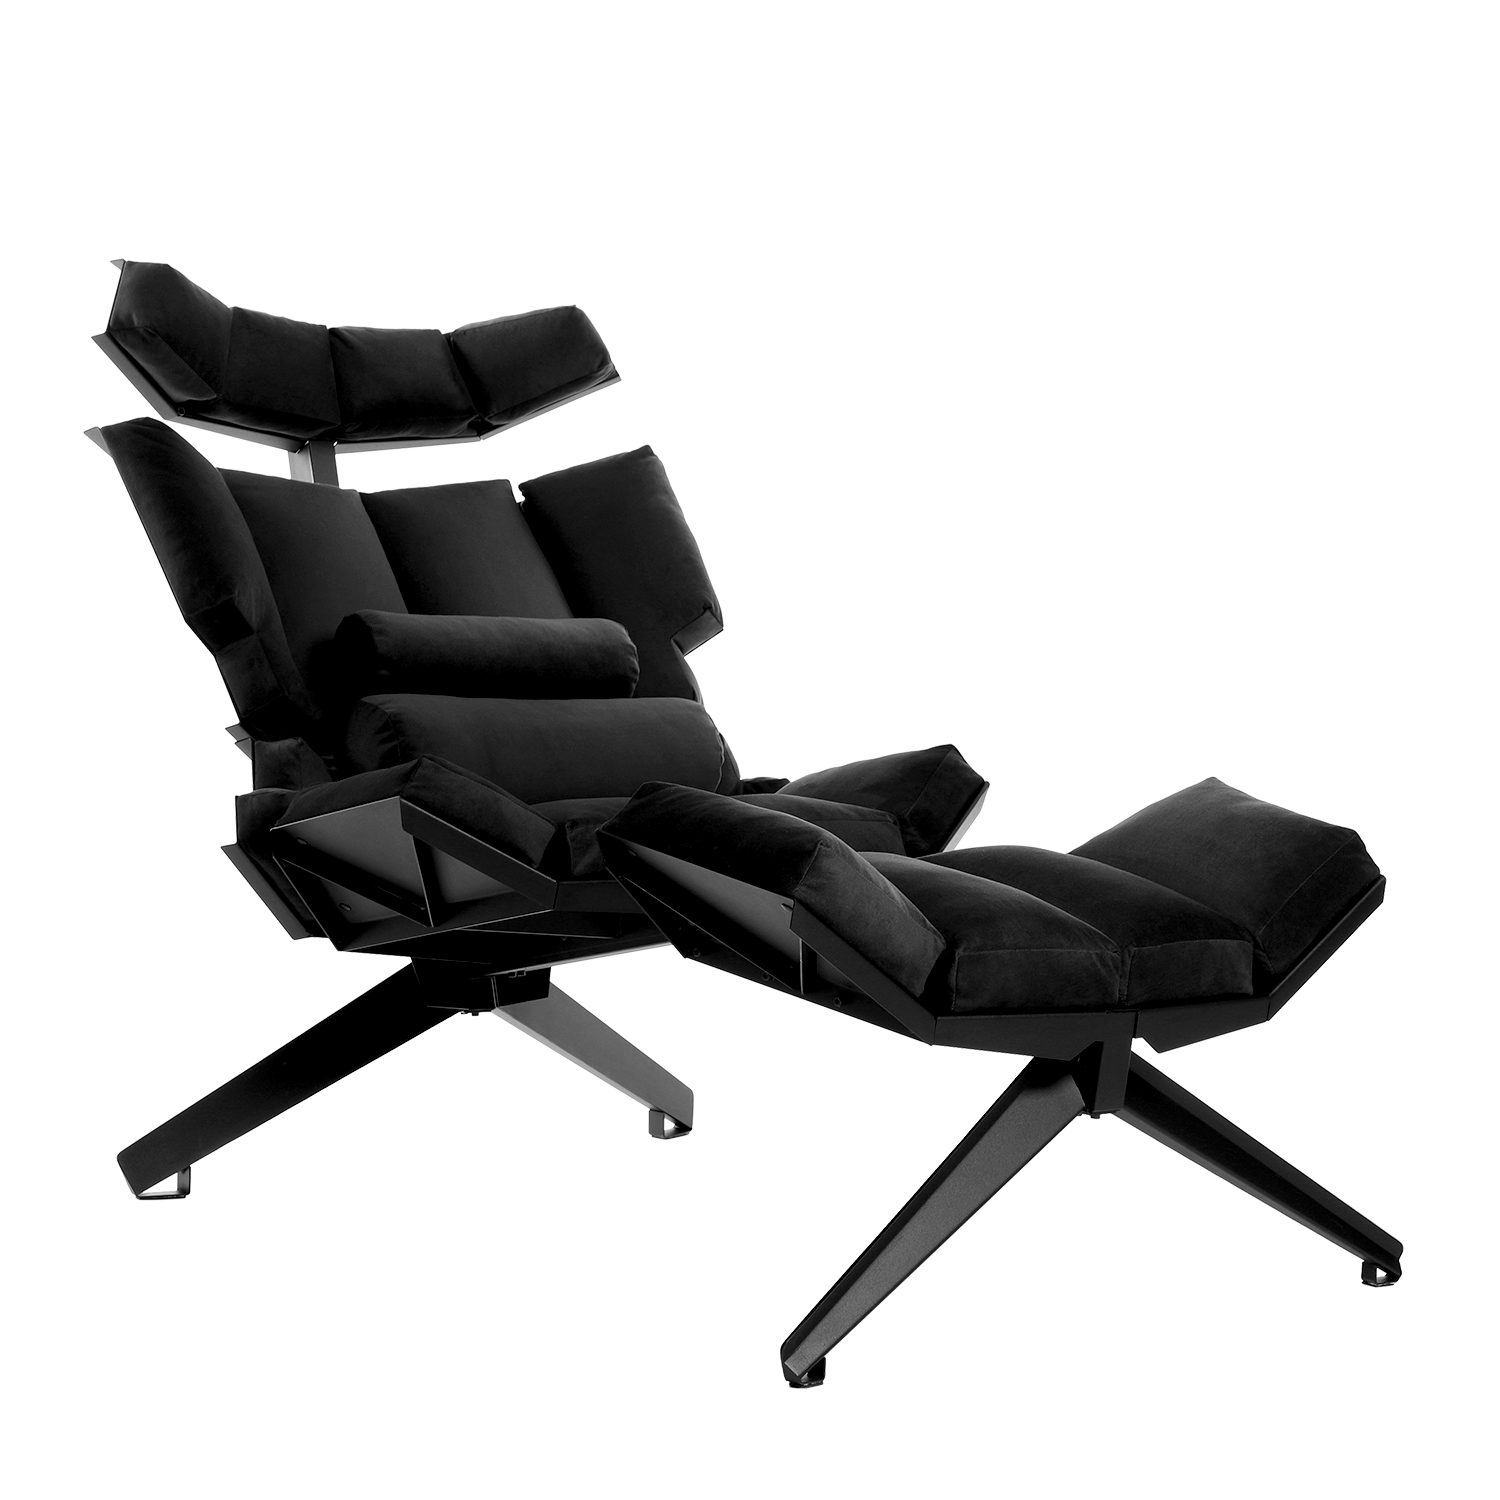 X1 lounge chair